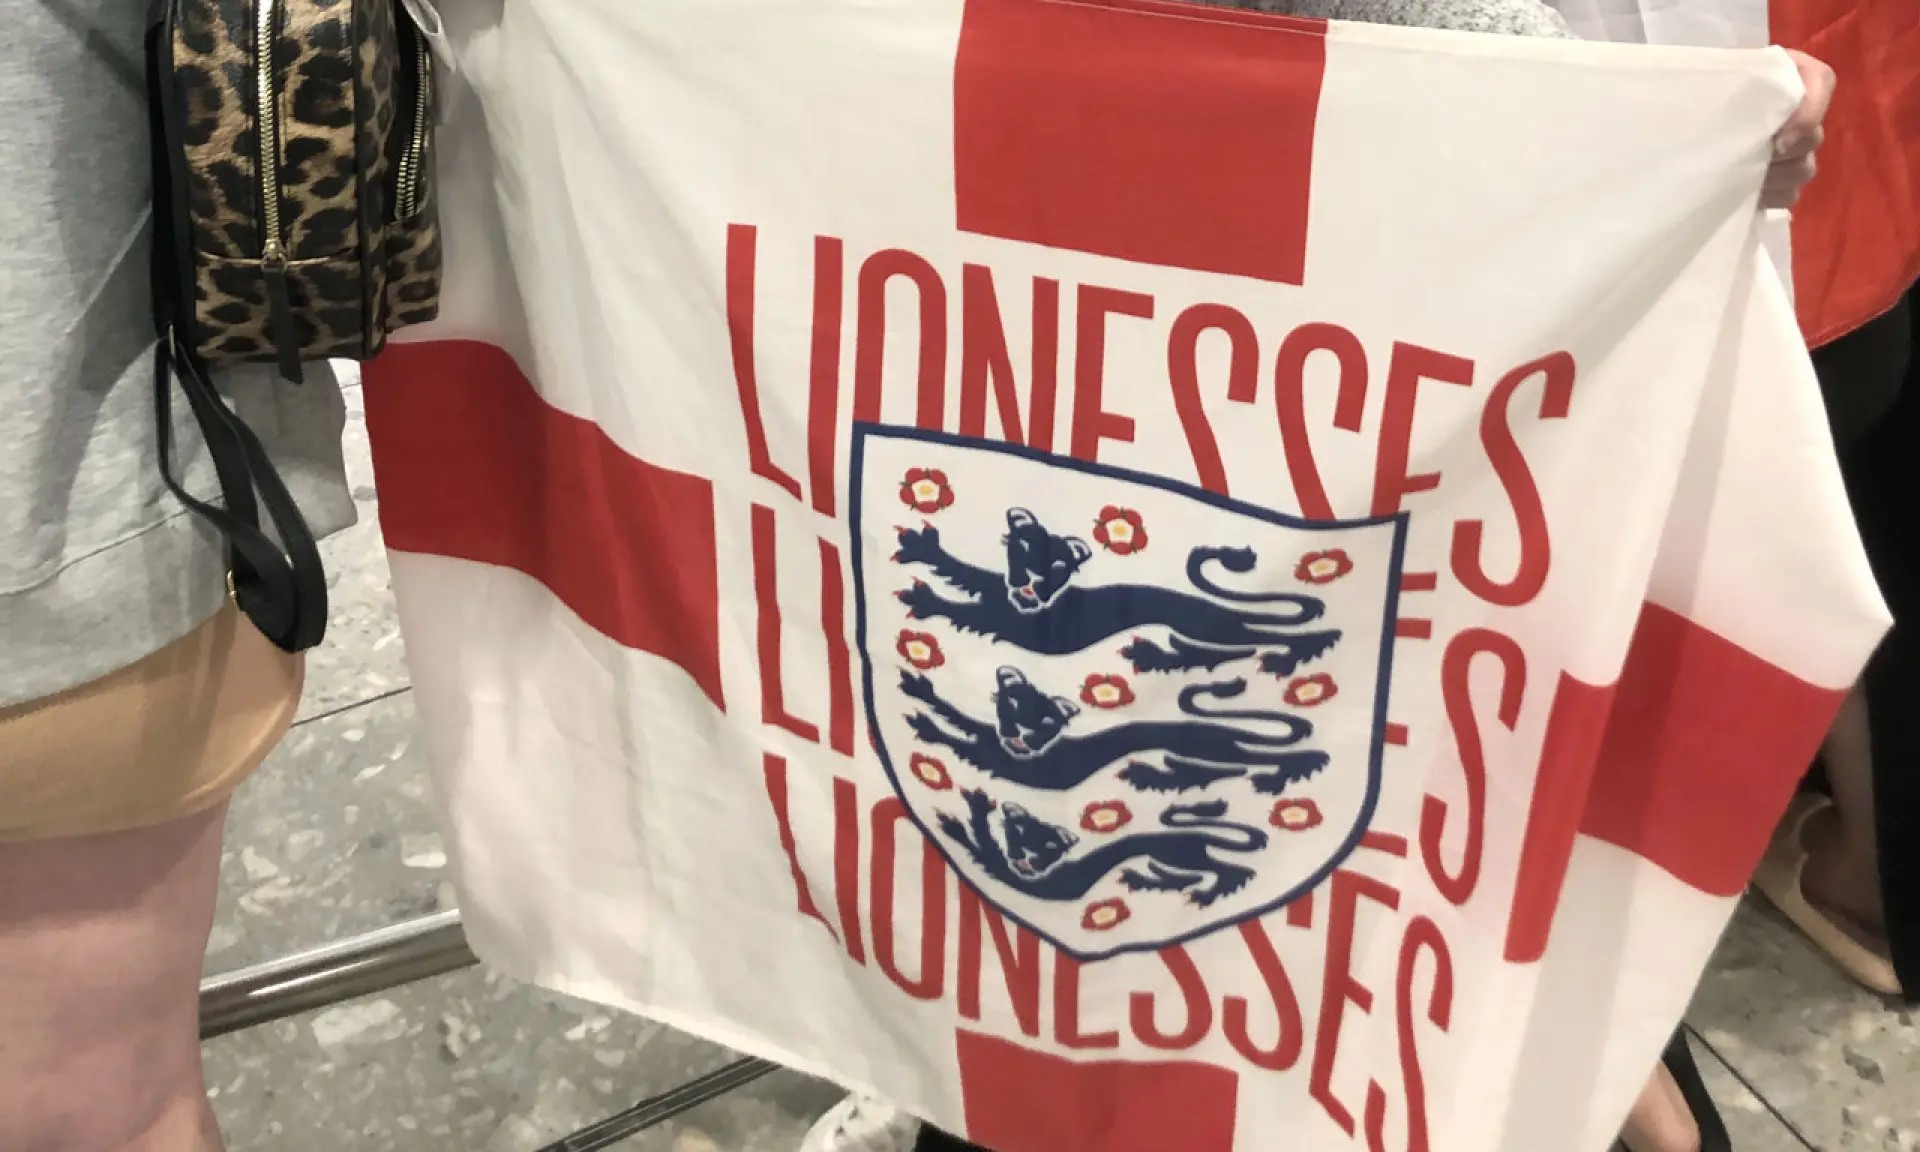 England Lionesses flag